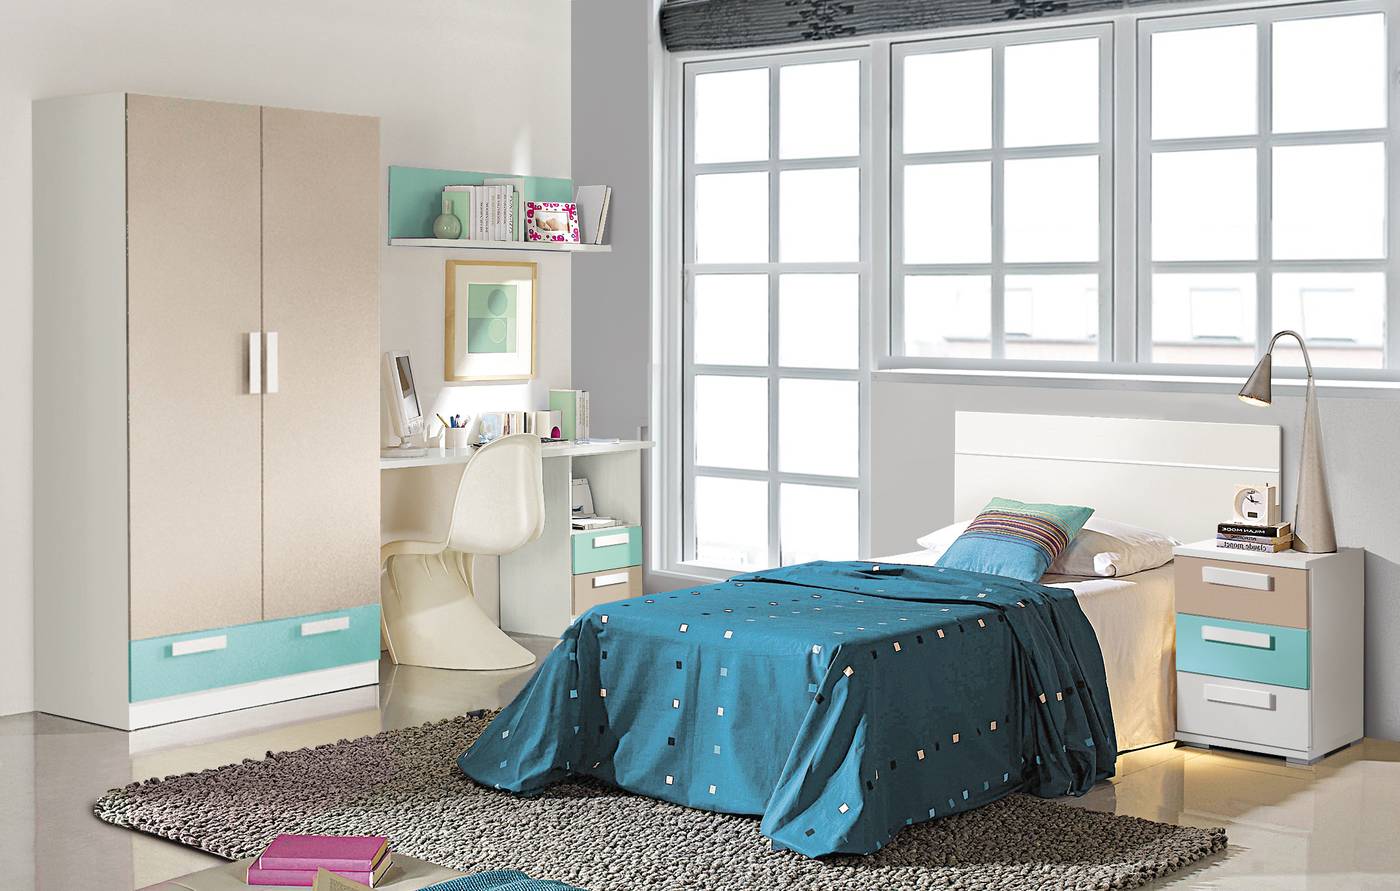 Dormitorio Juvenil Blanco - Dormitorio juvenil: mesita 3 cajones y cabecero color blanco